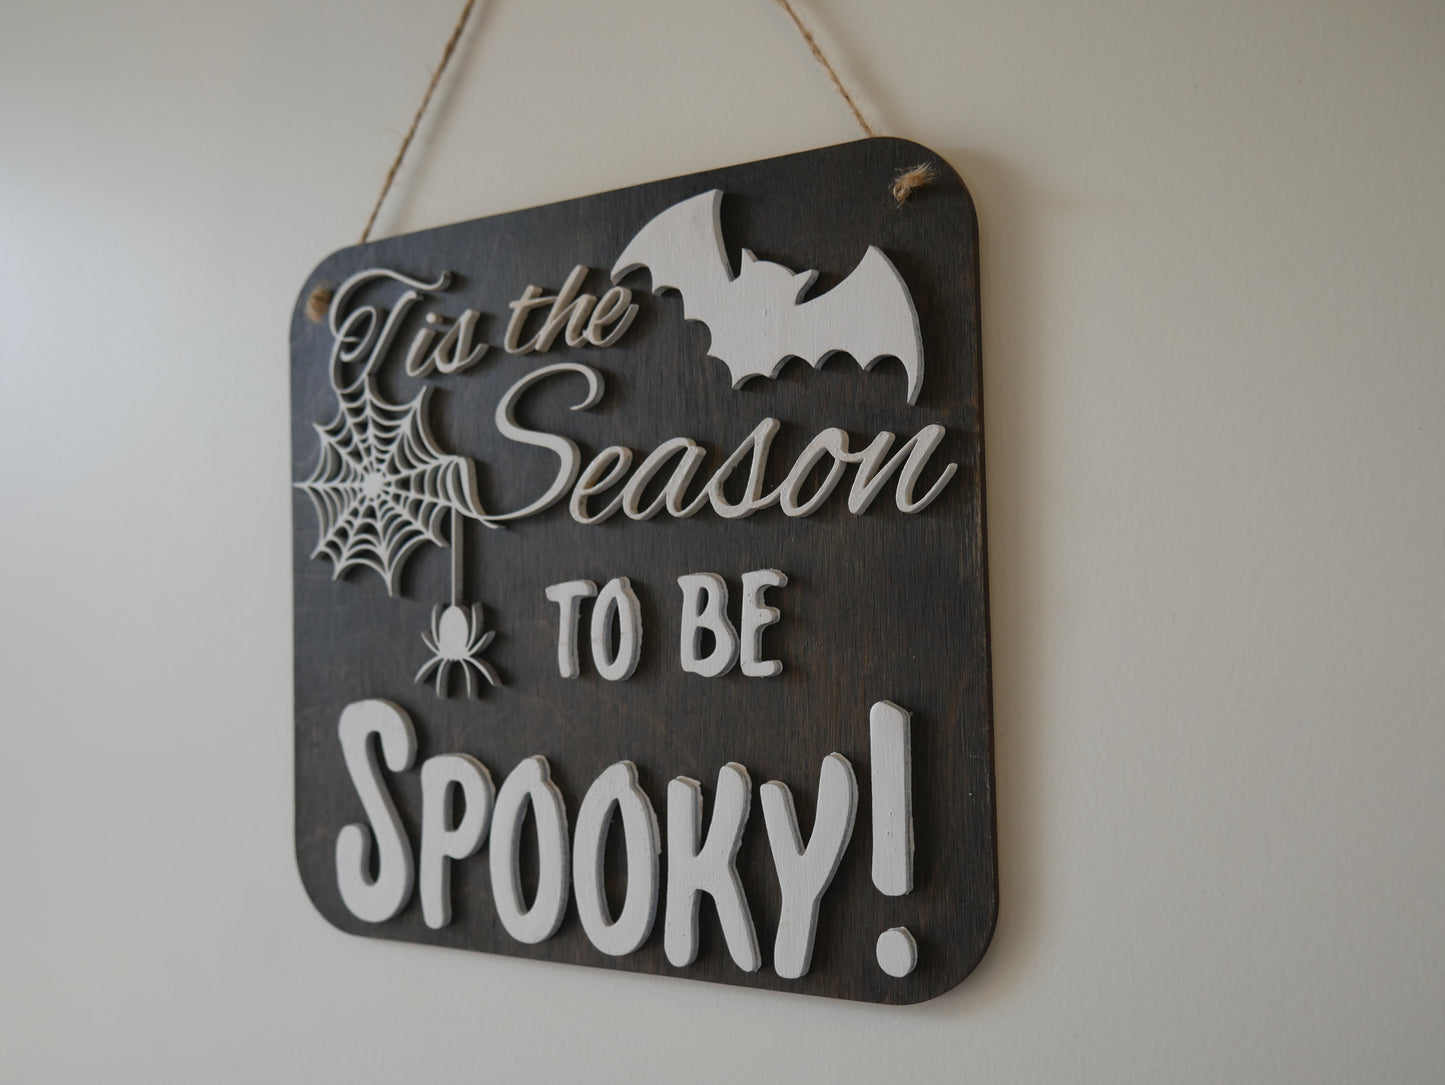 Tis the Season To Be Spooky